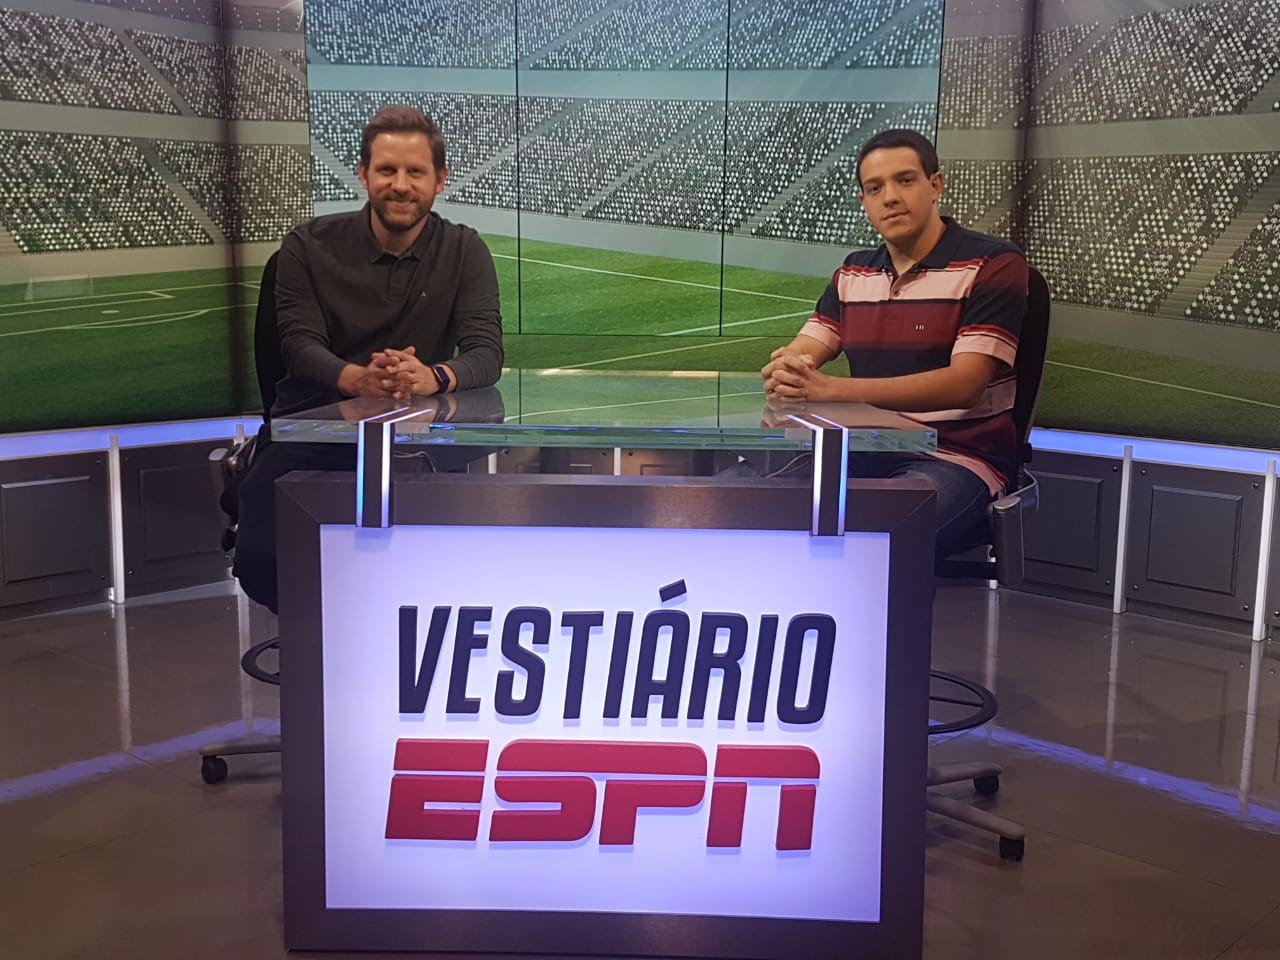 Com foco no ao vivo, ESPN e Star+ terão programação especial na cobertura  da Copa do Catar - ESPN MediaZone Brasil